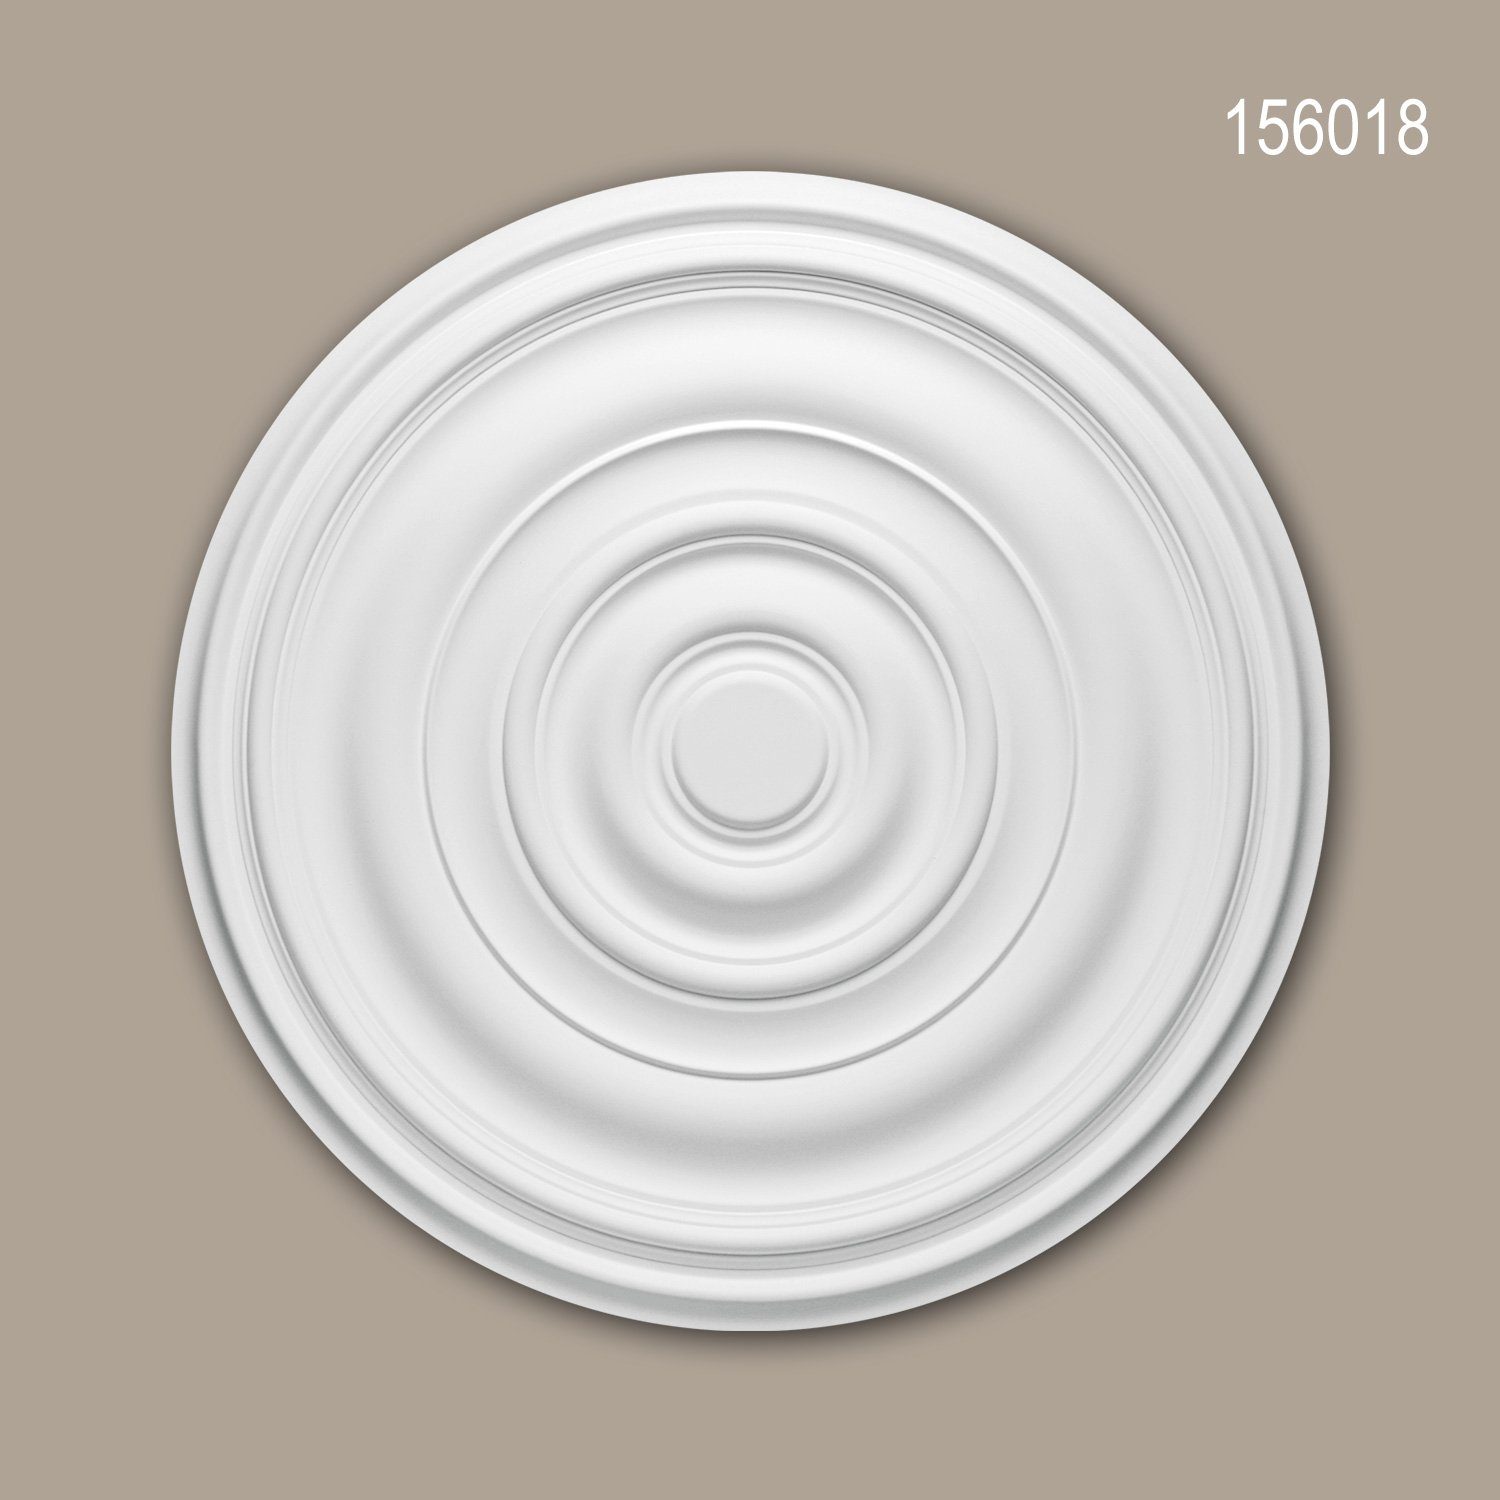 Stil: Profhome (Rosette, Zeitlos Stuckrosette, Deckenrosette, Klassisch Zierelement, 1 cm), weiß, Durchmesser Decken-Rosette 156018 Deckenelement, St., Medallion, / 74,5 vorgrundiert,